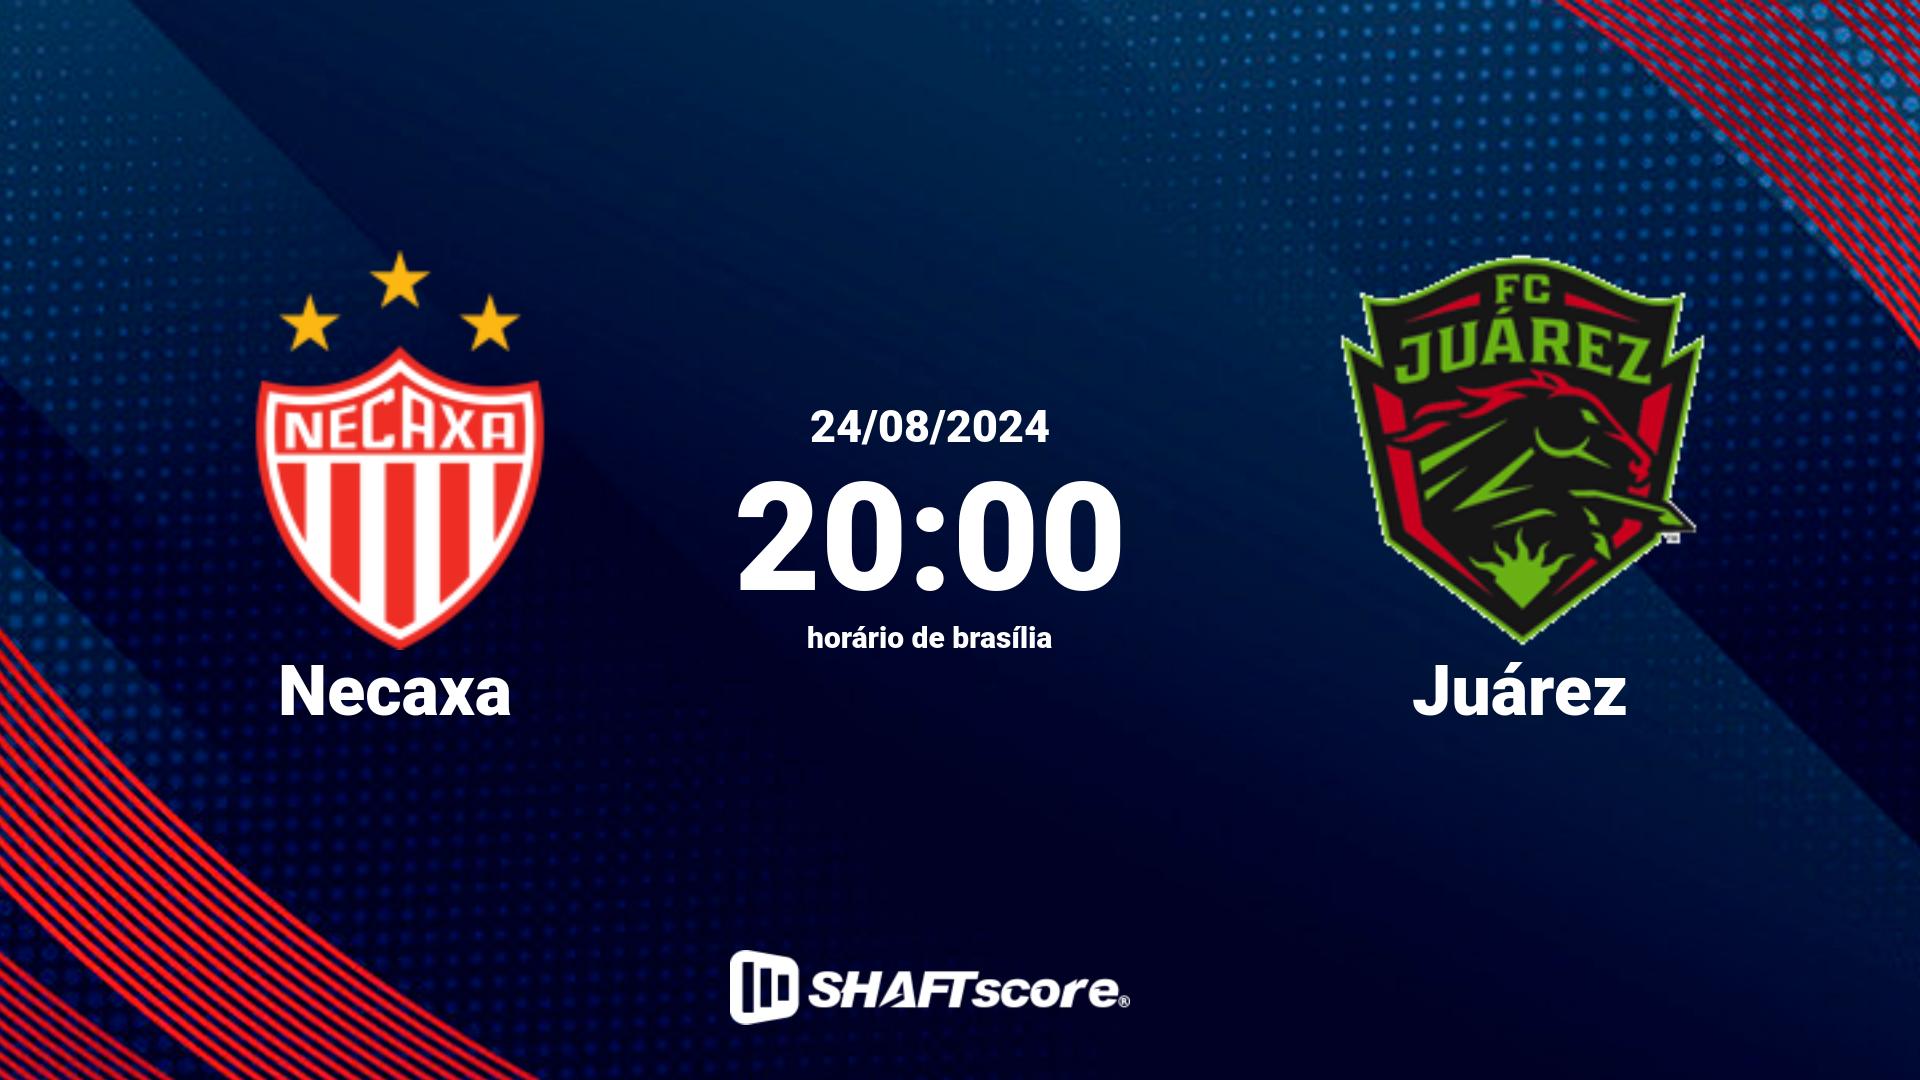 Estatísticas do jogo Necaxa vs Juárez 24.08 20:00